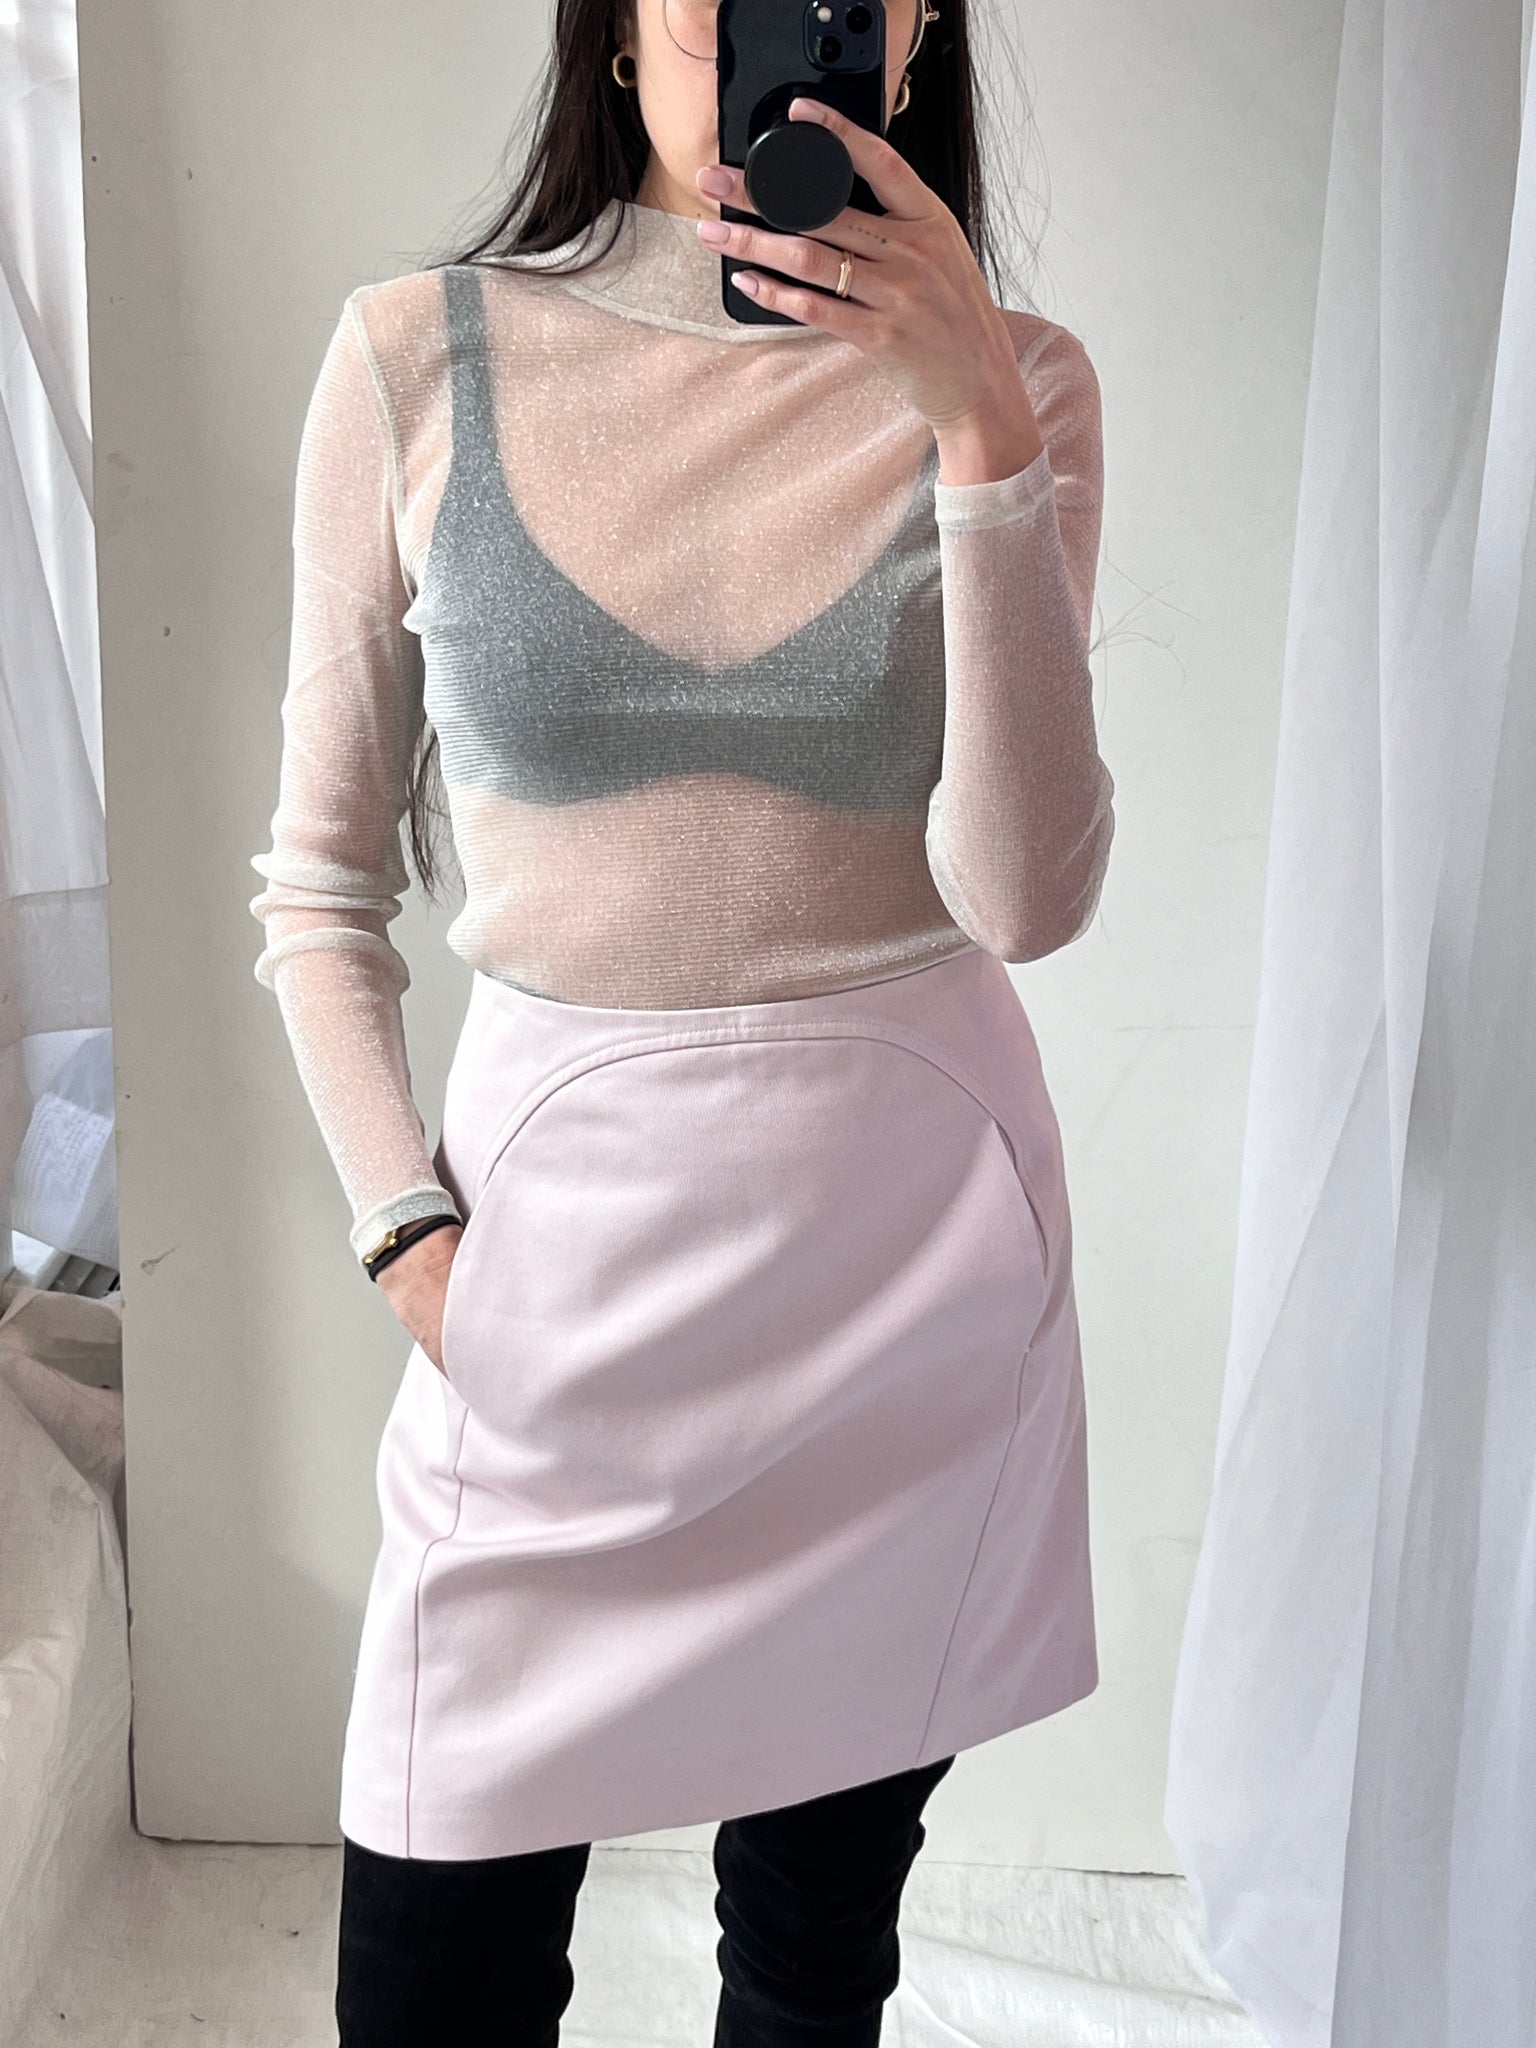 Jill Sander pink skirt